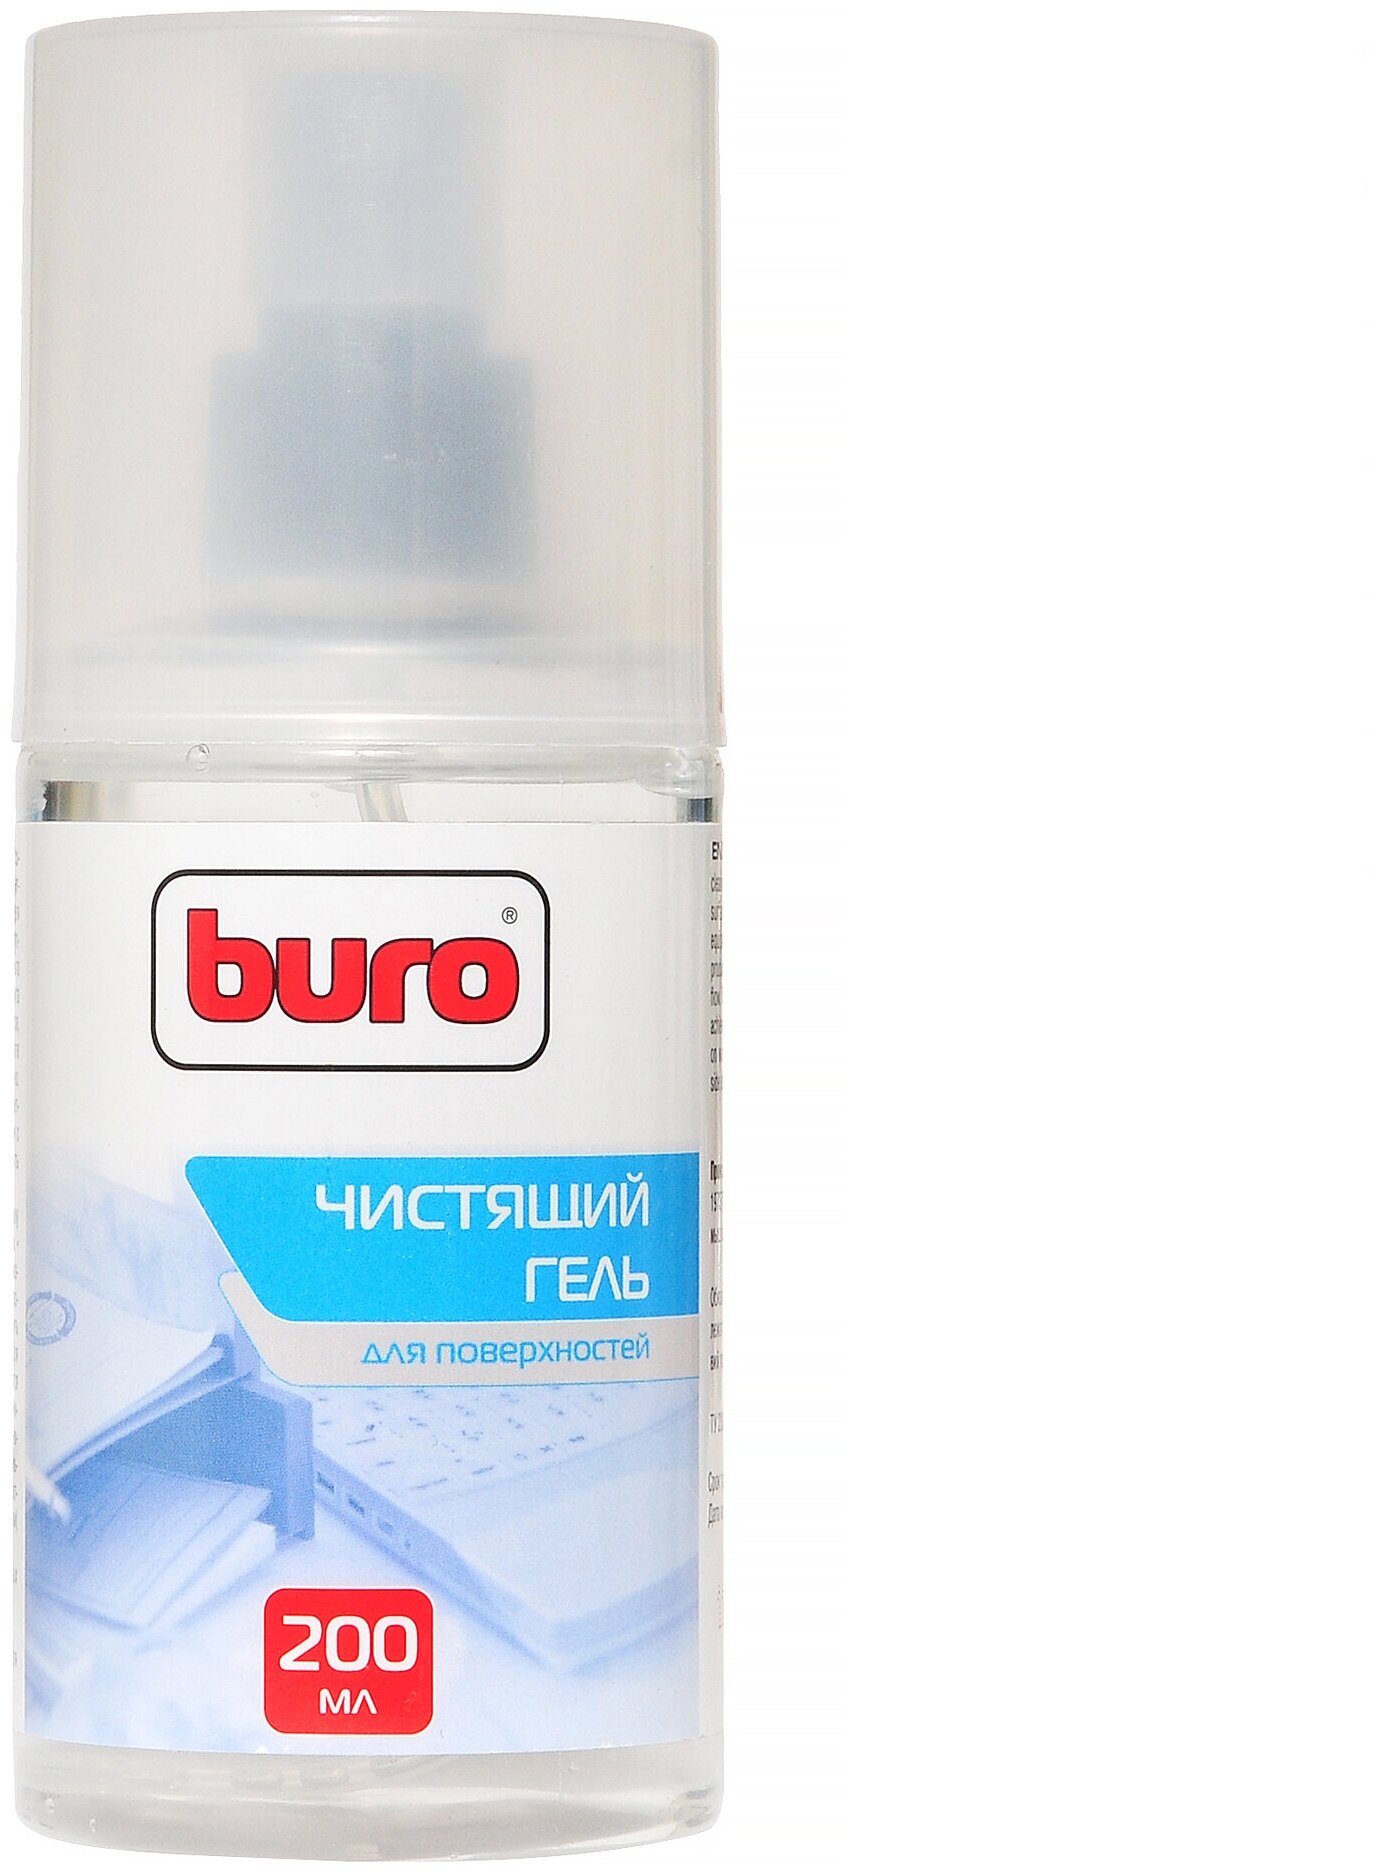 Набор Buro BU-Gsurface чистящий гель+многоразовая салфетка для оргтехники для клавиатуры